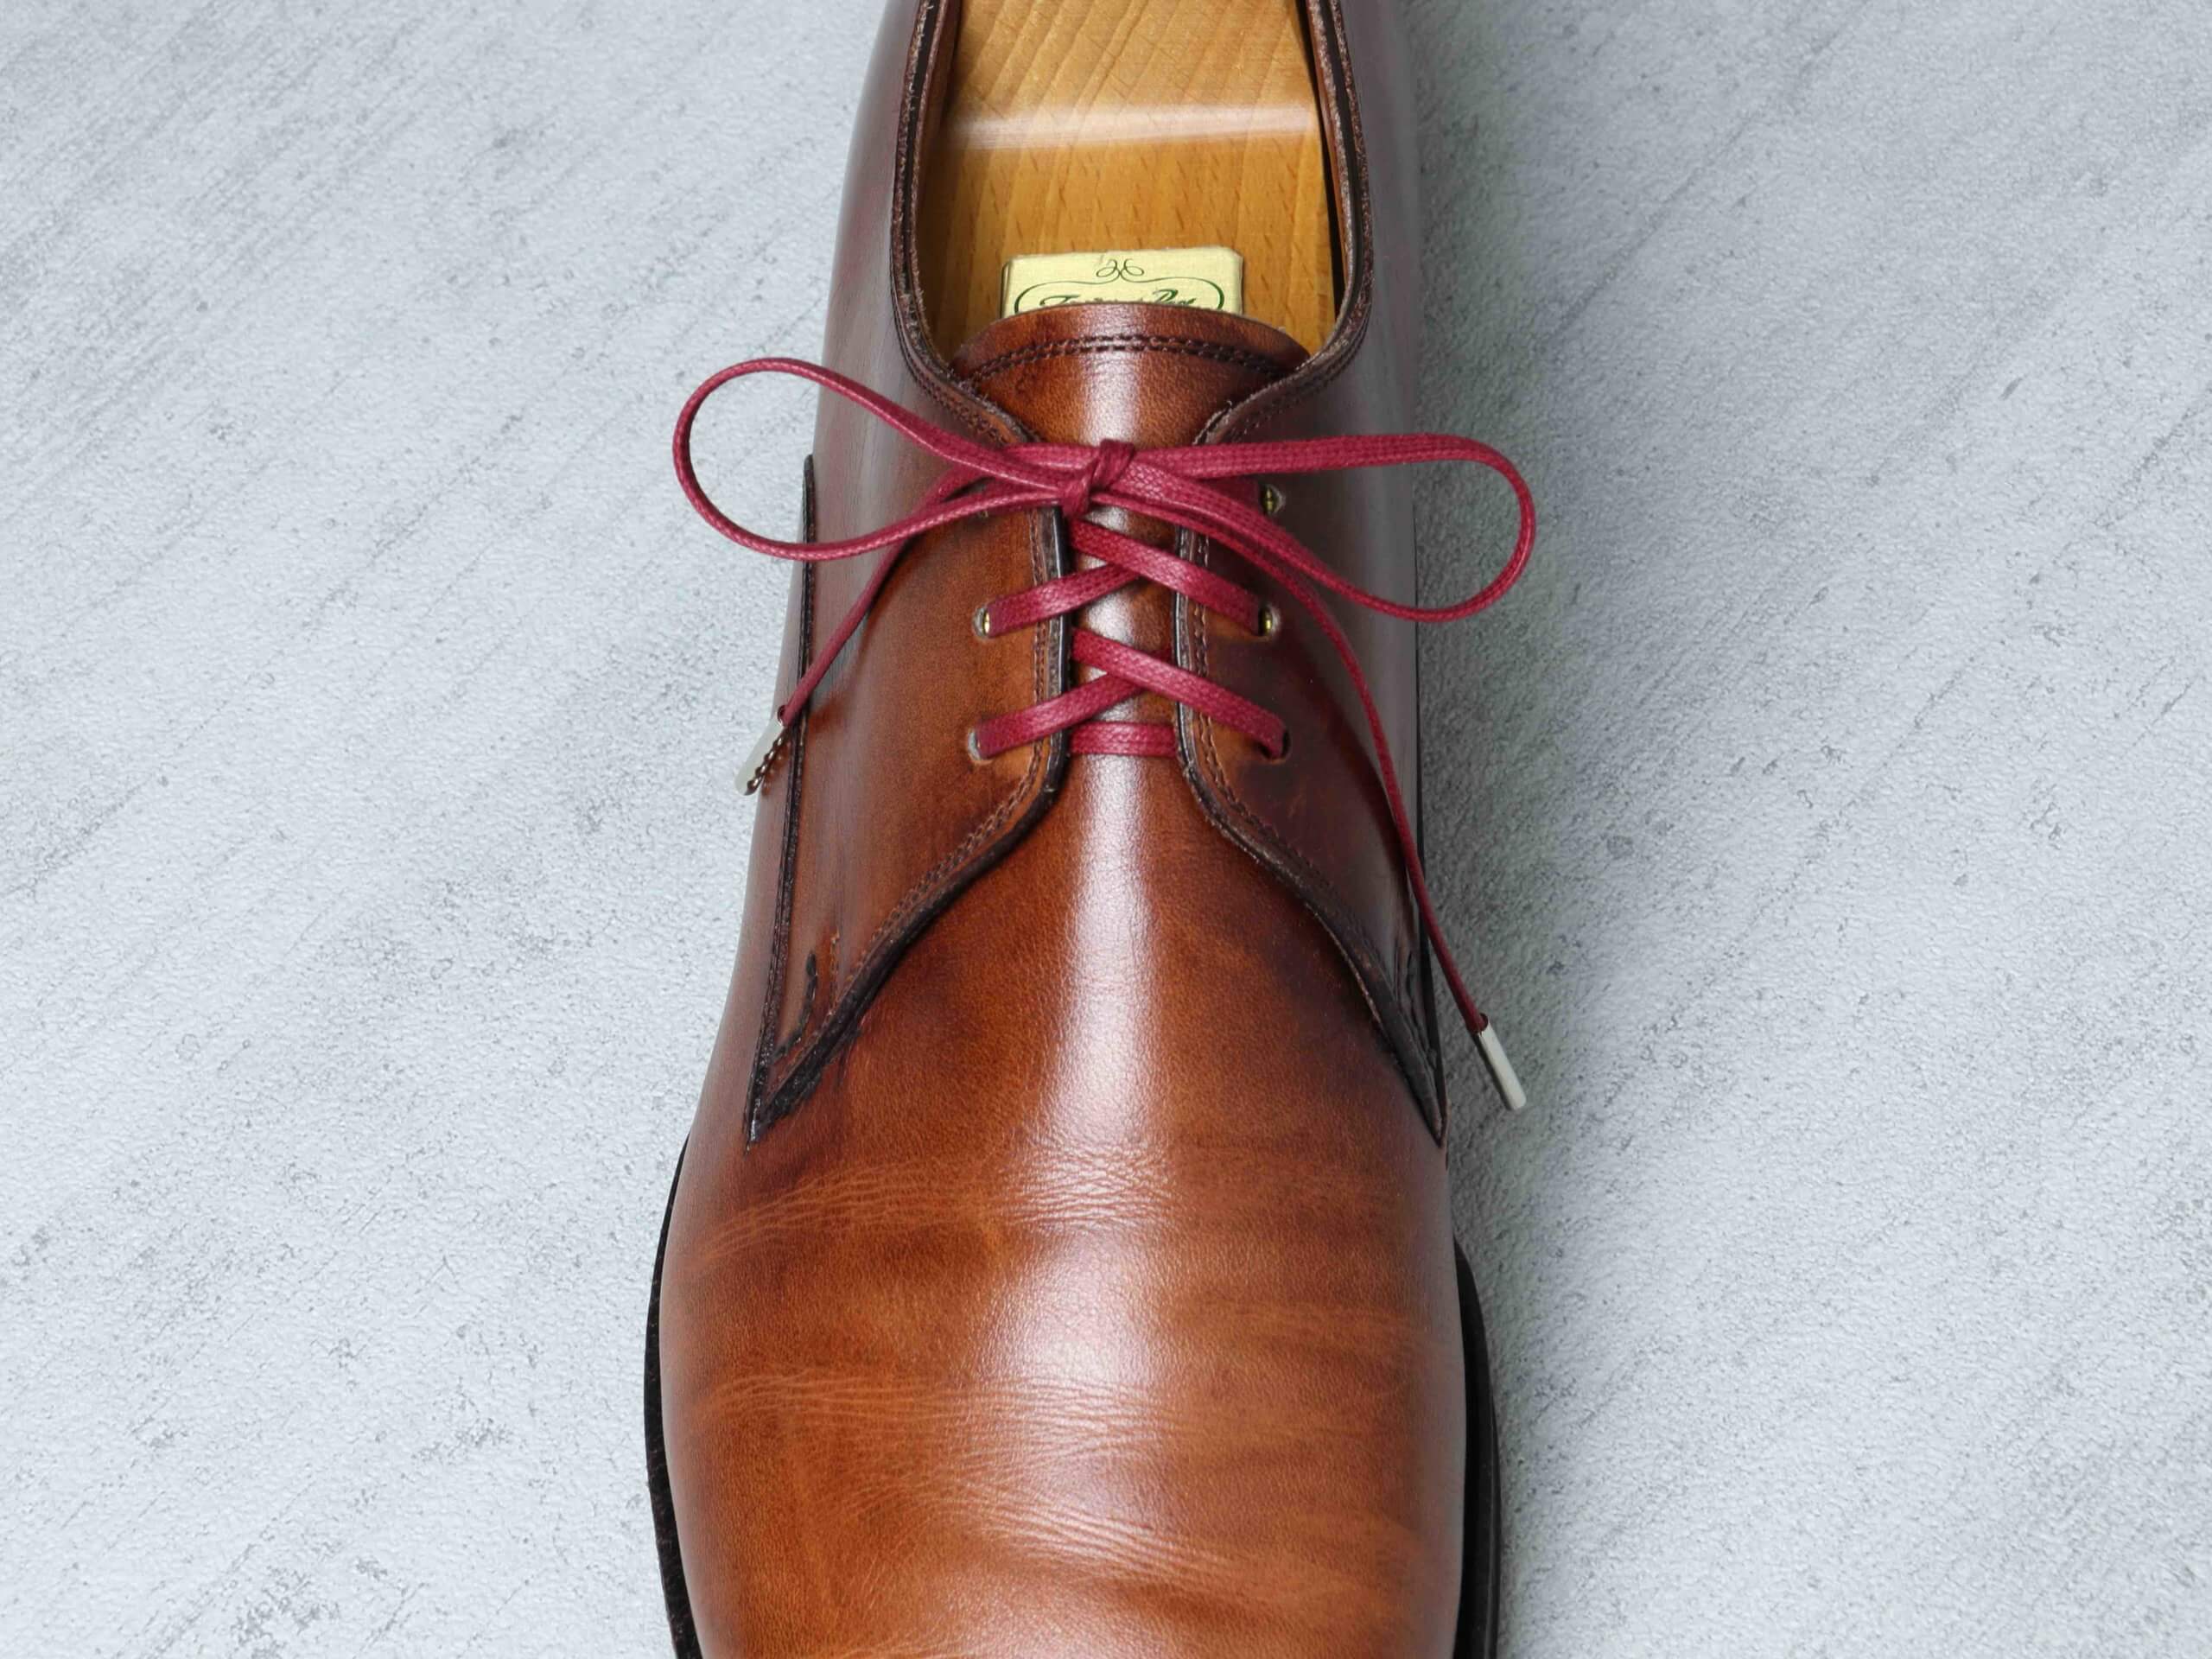 革靴の紐 シューレースのおすすめ ハイクオリティーな蝋引き紐 Kutsumedia クツメディア 革靴と靴磨きのブログメディア